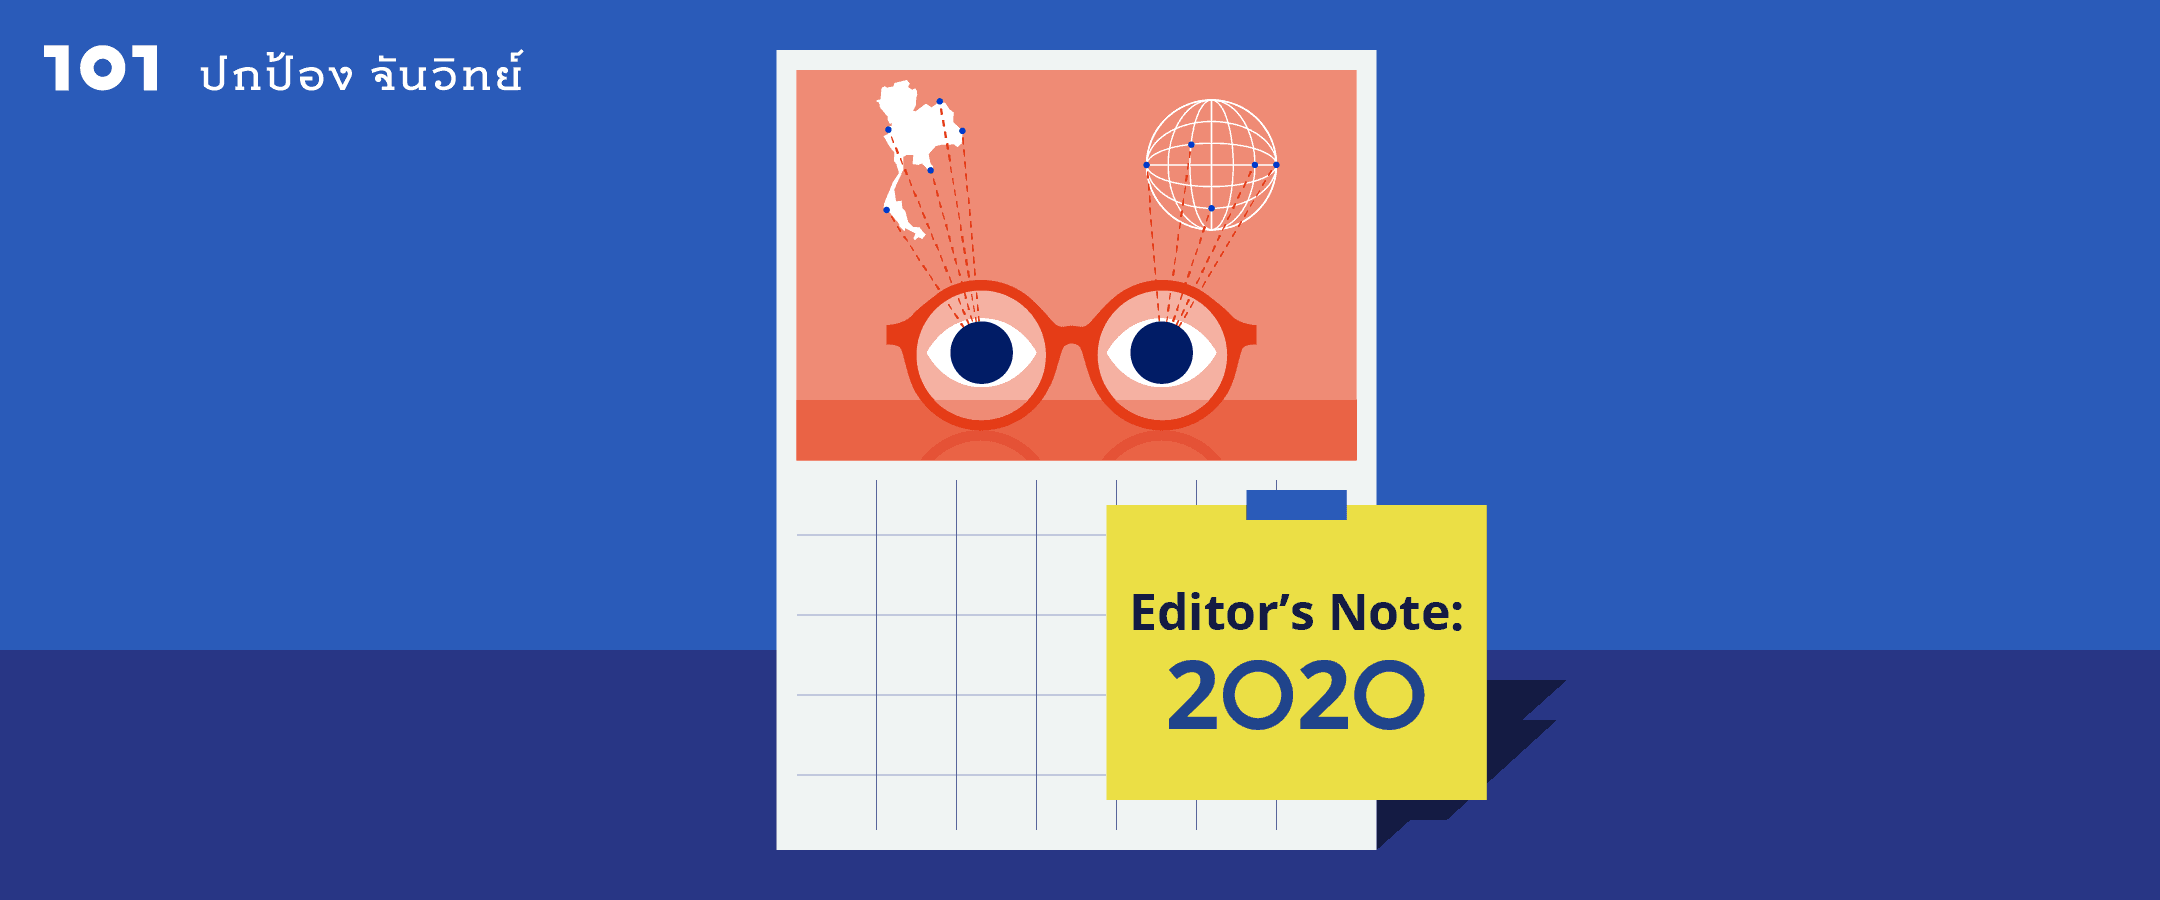 Editor’s Note 2020 : ทางรอดของสื่อยุคดิจิทัล "สื่อต้องเป็นสื่อ และกลับคืนสู่มือประชาชน"